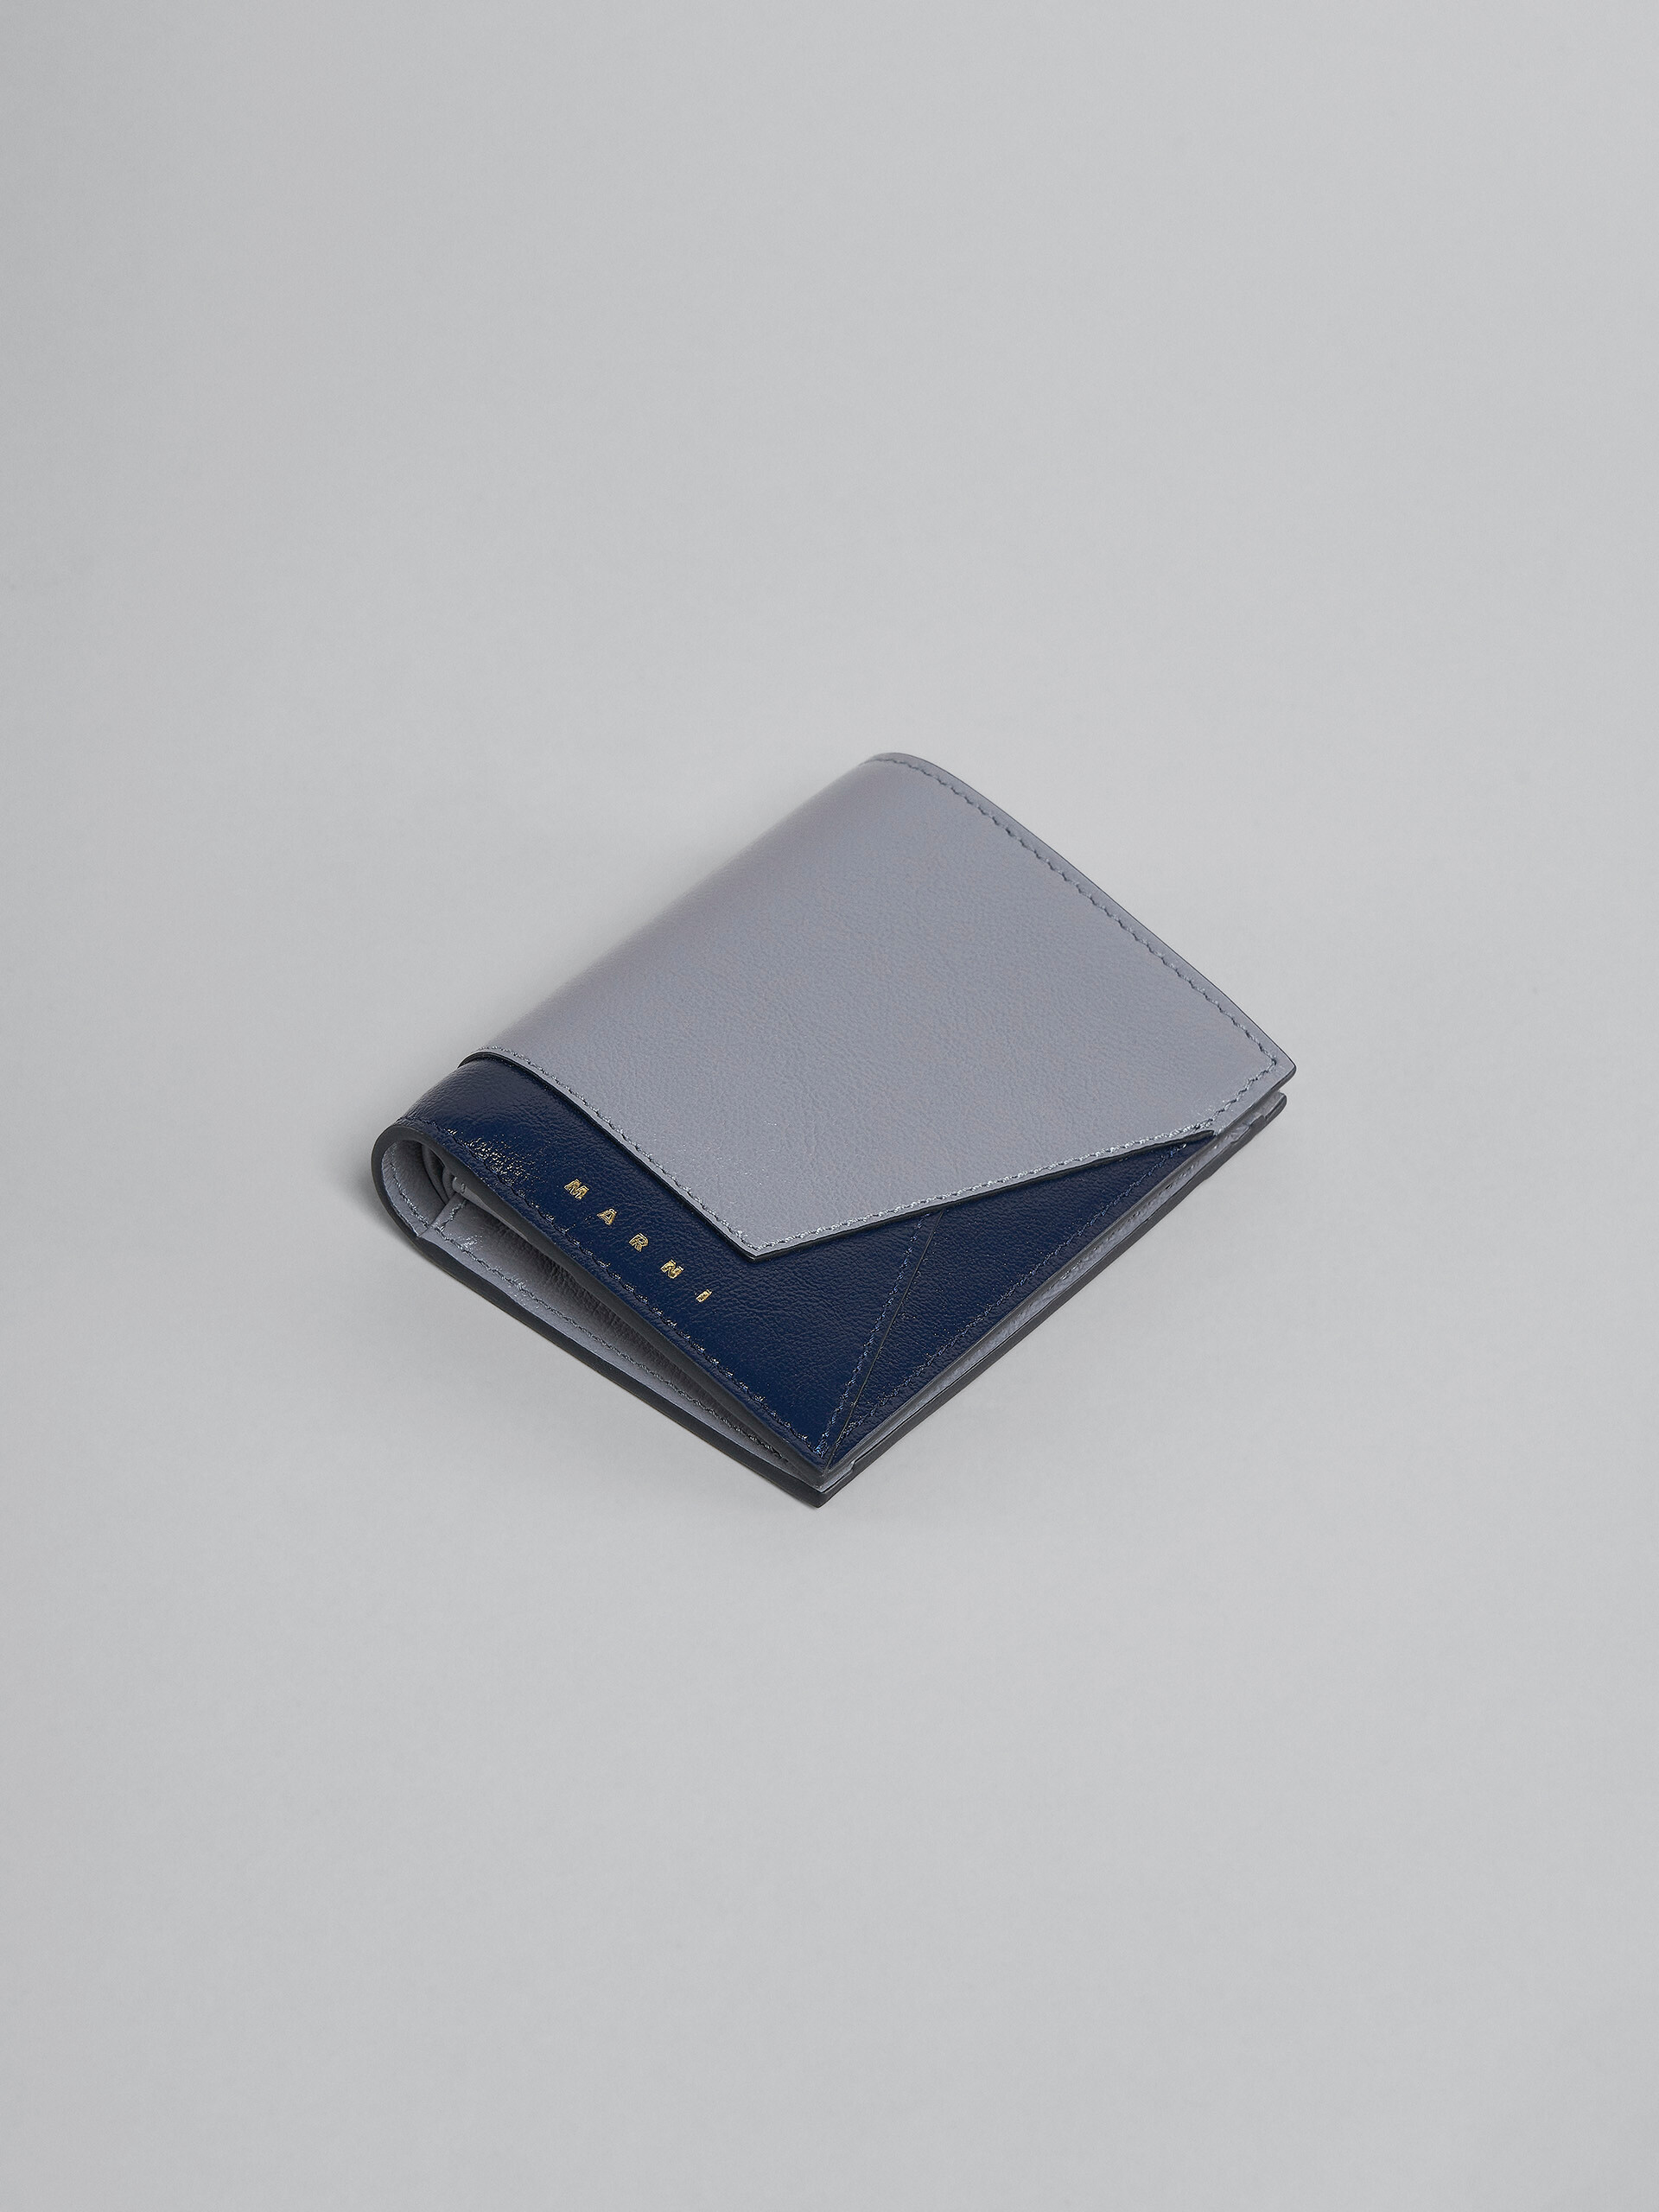 Zweifache Faltbrieftasche aus Leder in Grau und Blau - Brieftaschen - Image 5